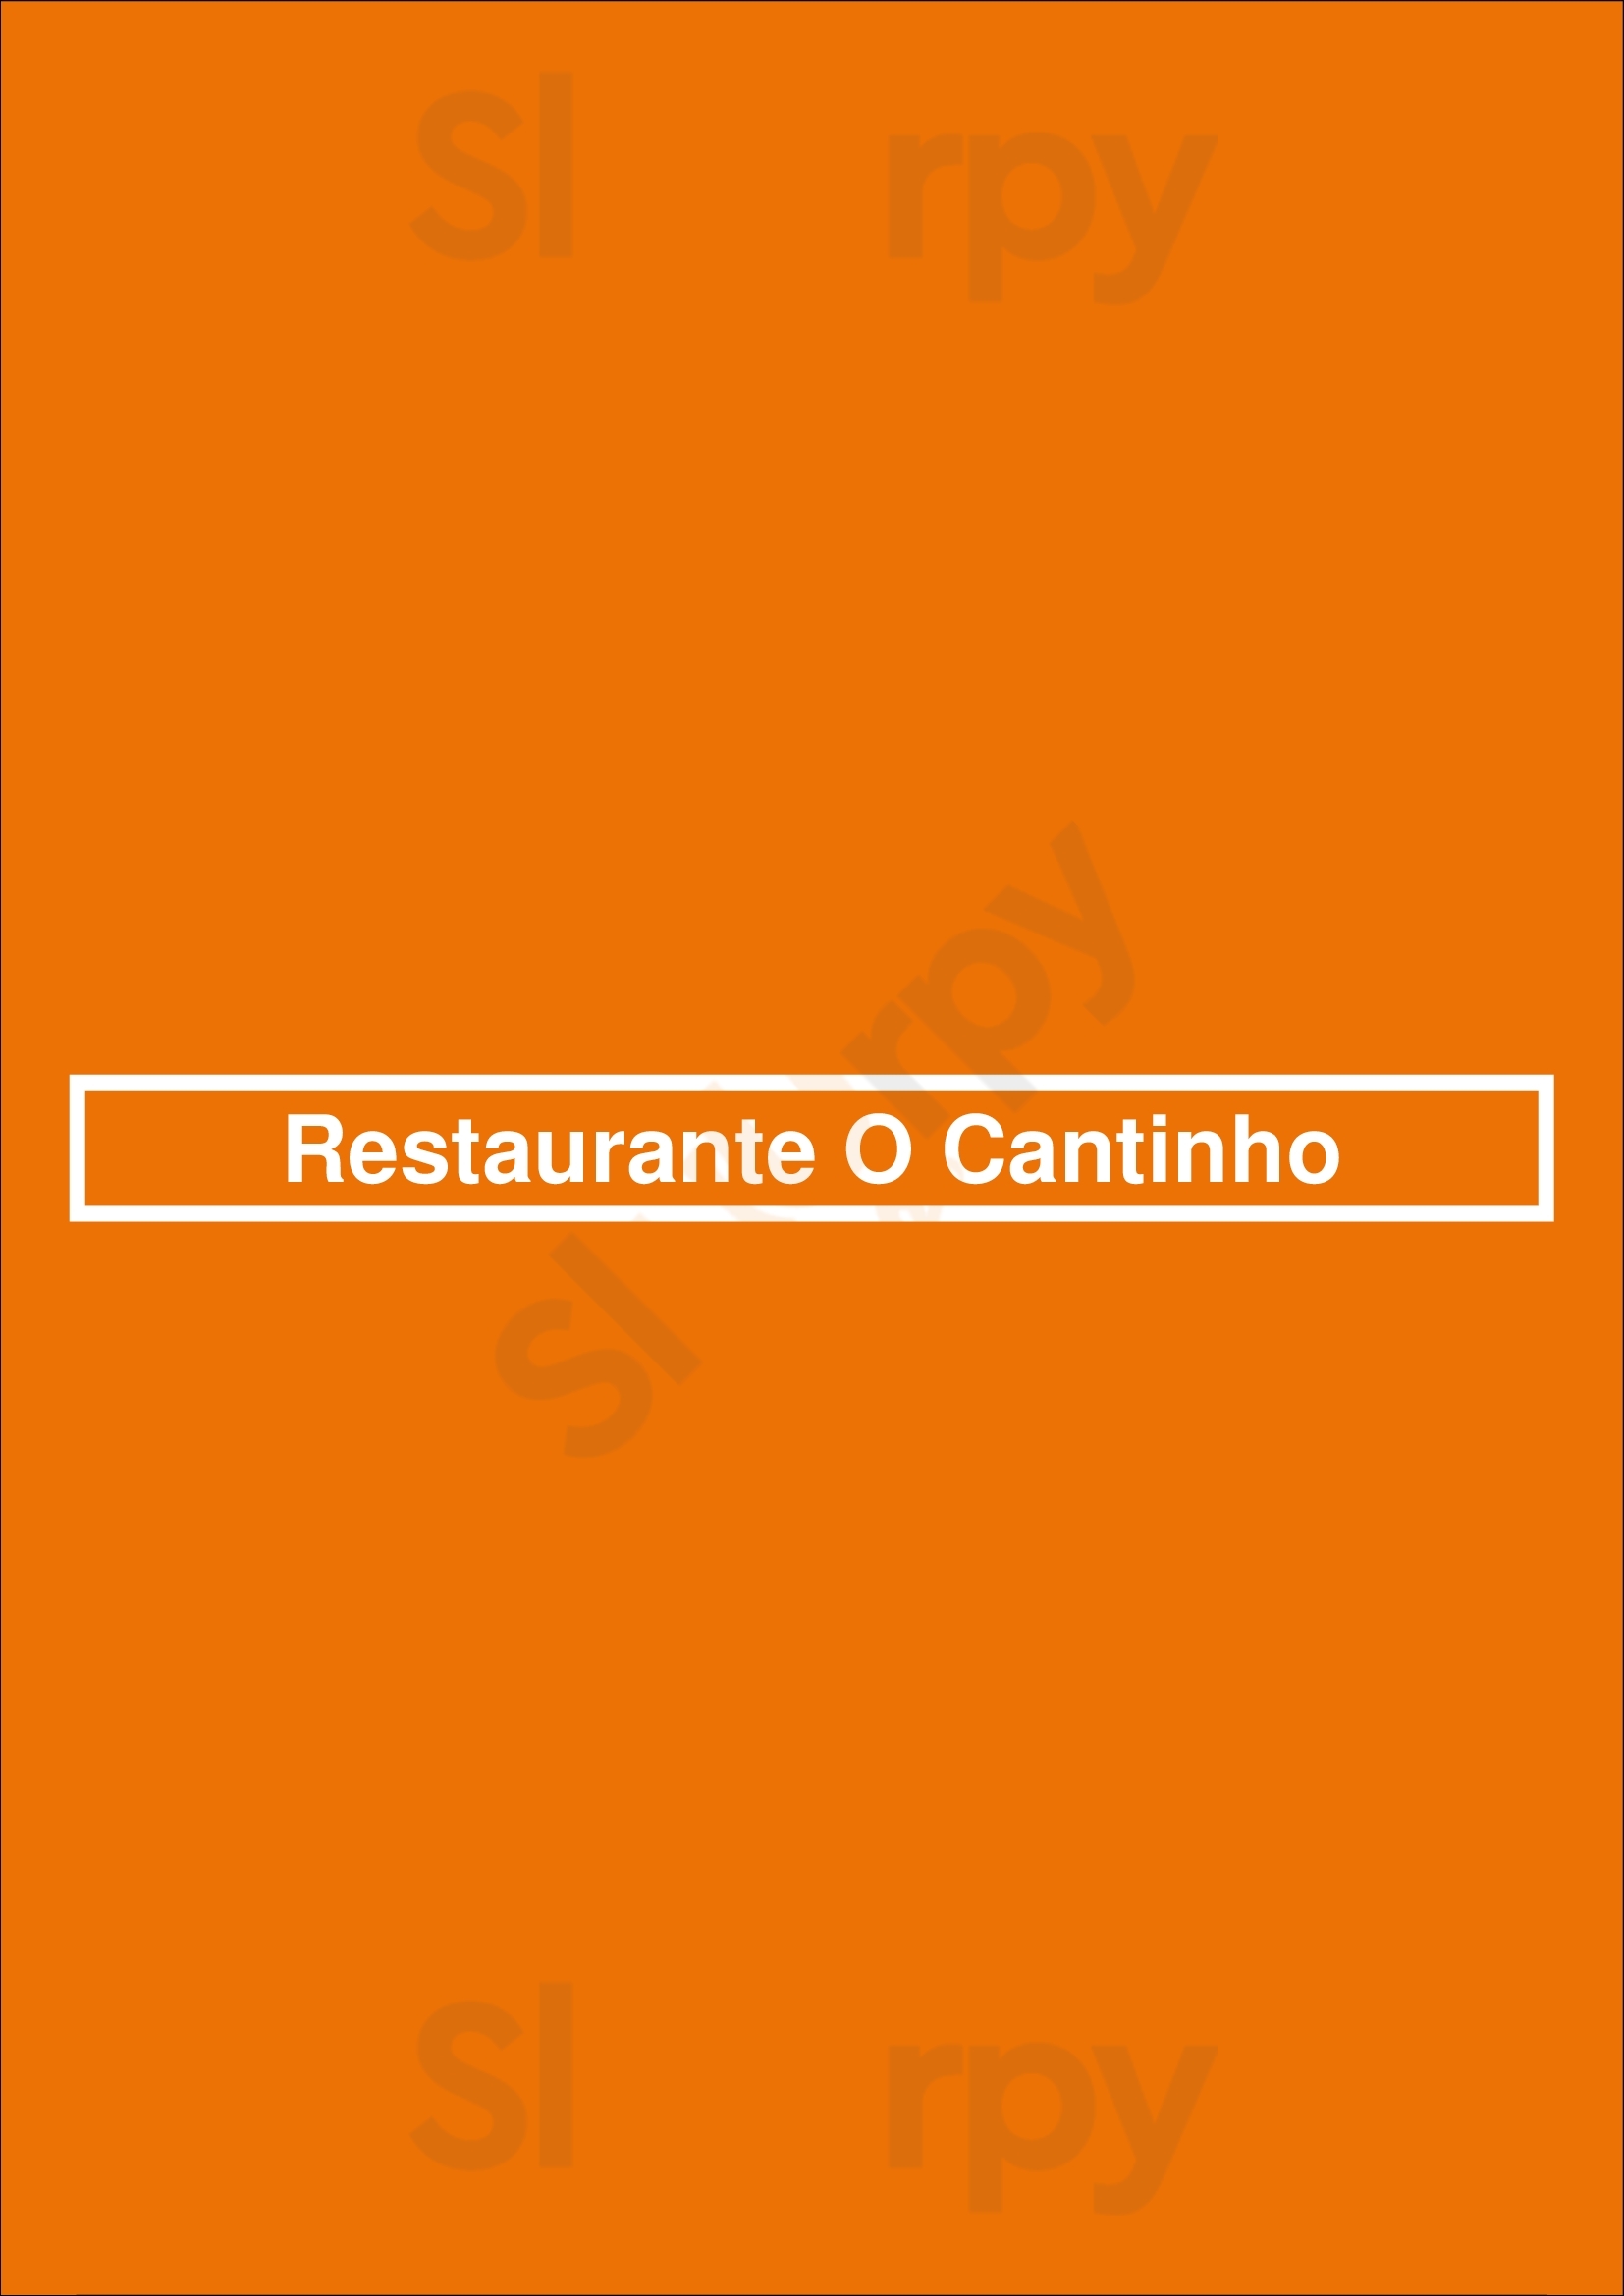 Restaurante O Cantinho Carvoeiro Menu - 1